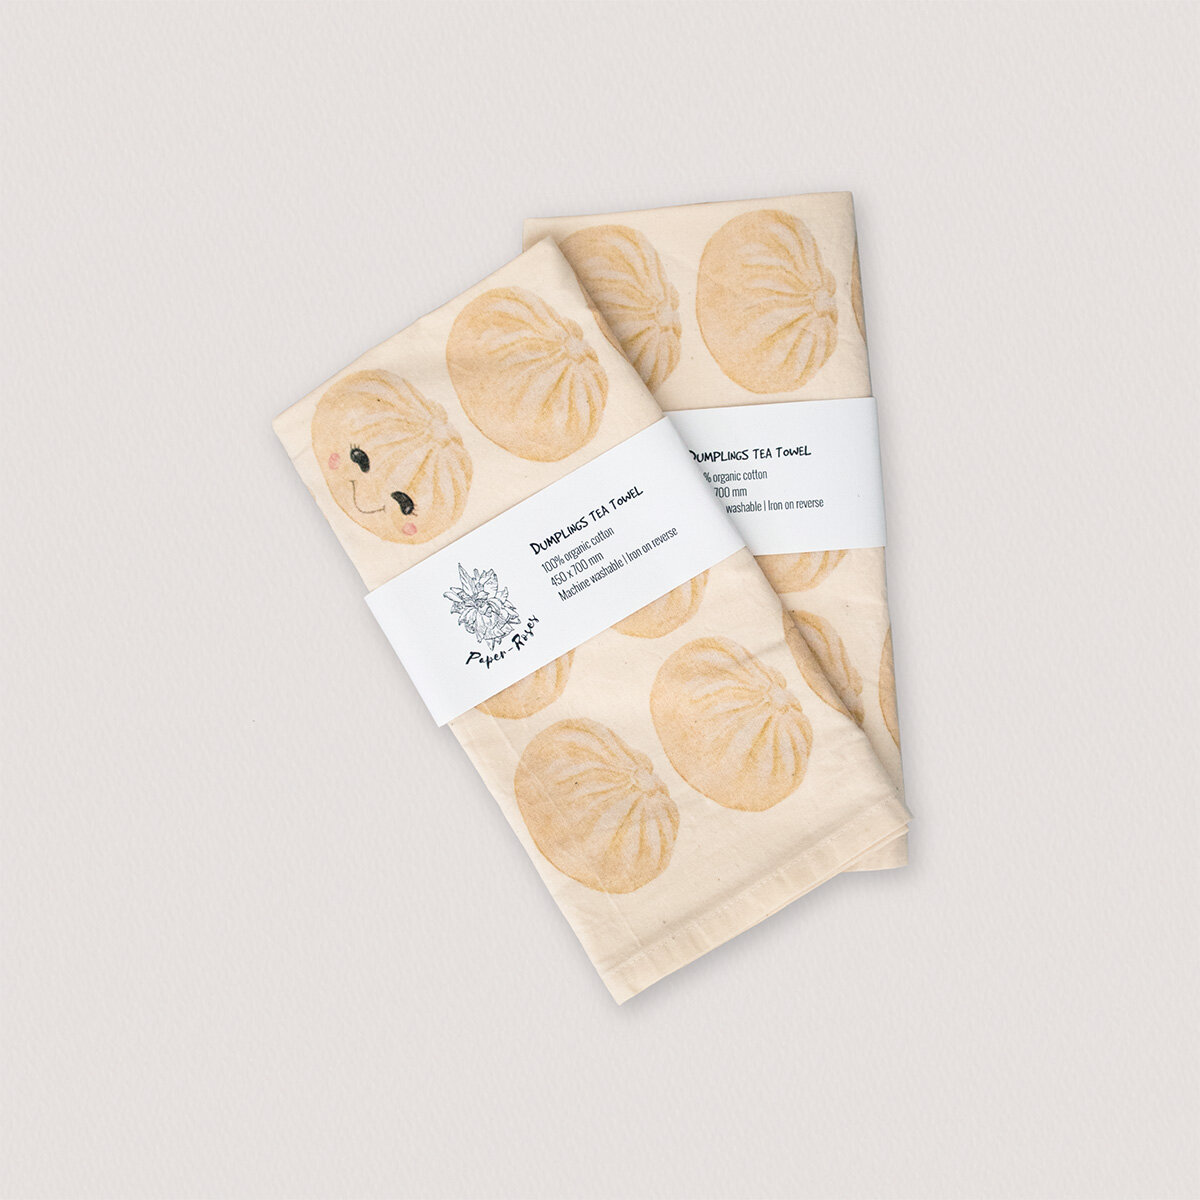 Paper-Roses | Gifts &amp; Goodies | Dumplings tea towel